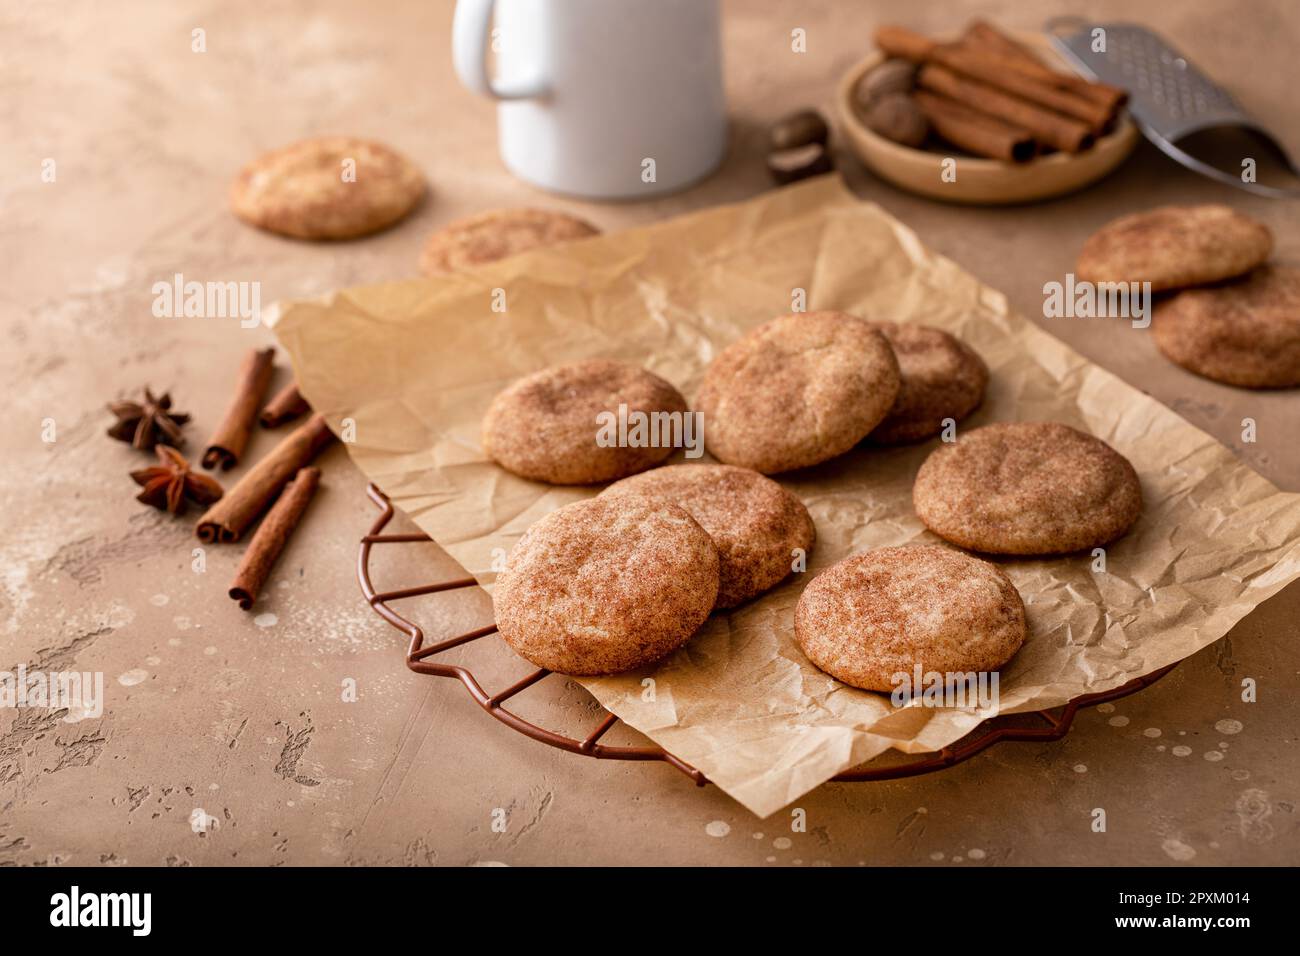 Biscuits à la cannelle avec du sucre cannelle sur un papier parchemin au lait, biscuits snickerdoodle classiques Banque D'Images